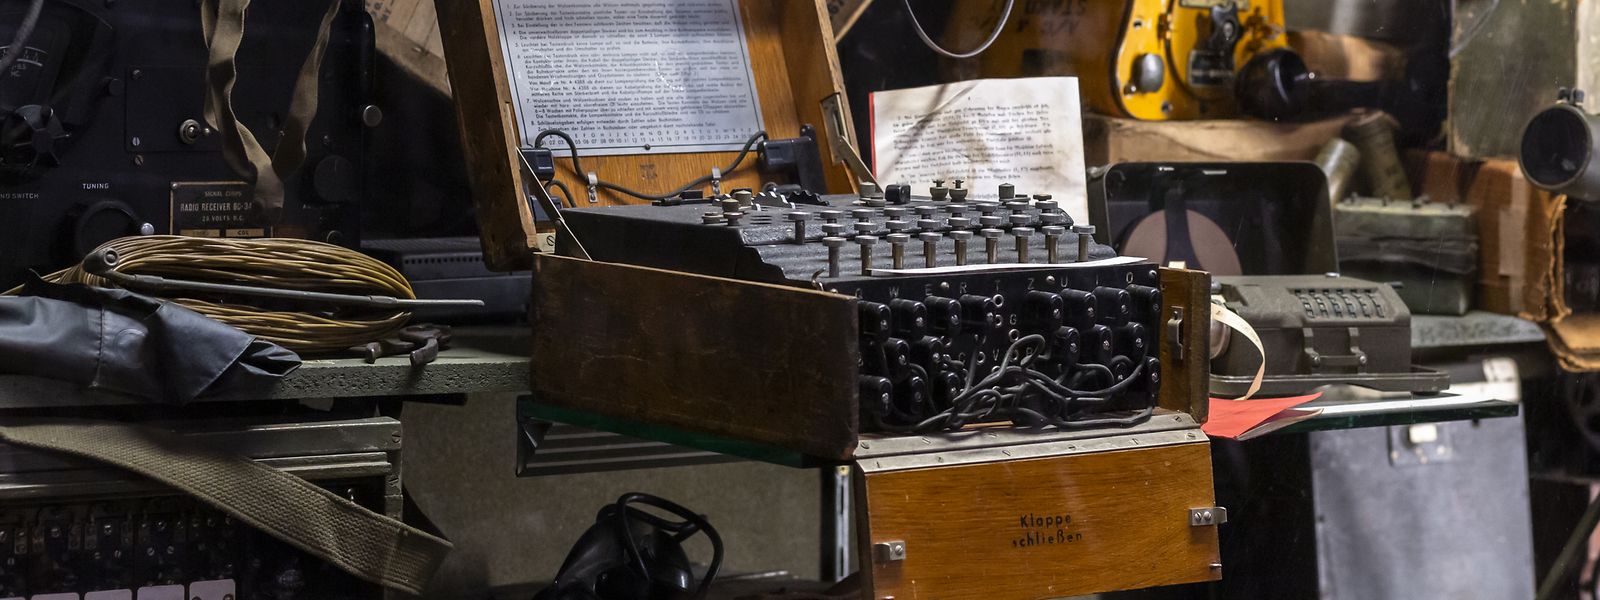 Eine der von den Nazis verwendeten Enigma-Chiffriermaschinen zur Verschlüsselung von Funksprüchen ist in Diekirch zu sehen.